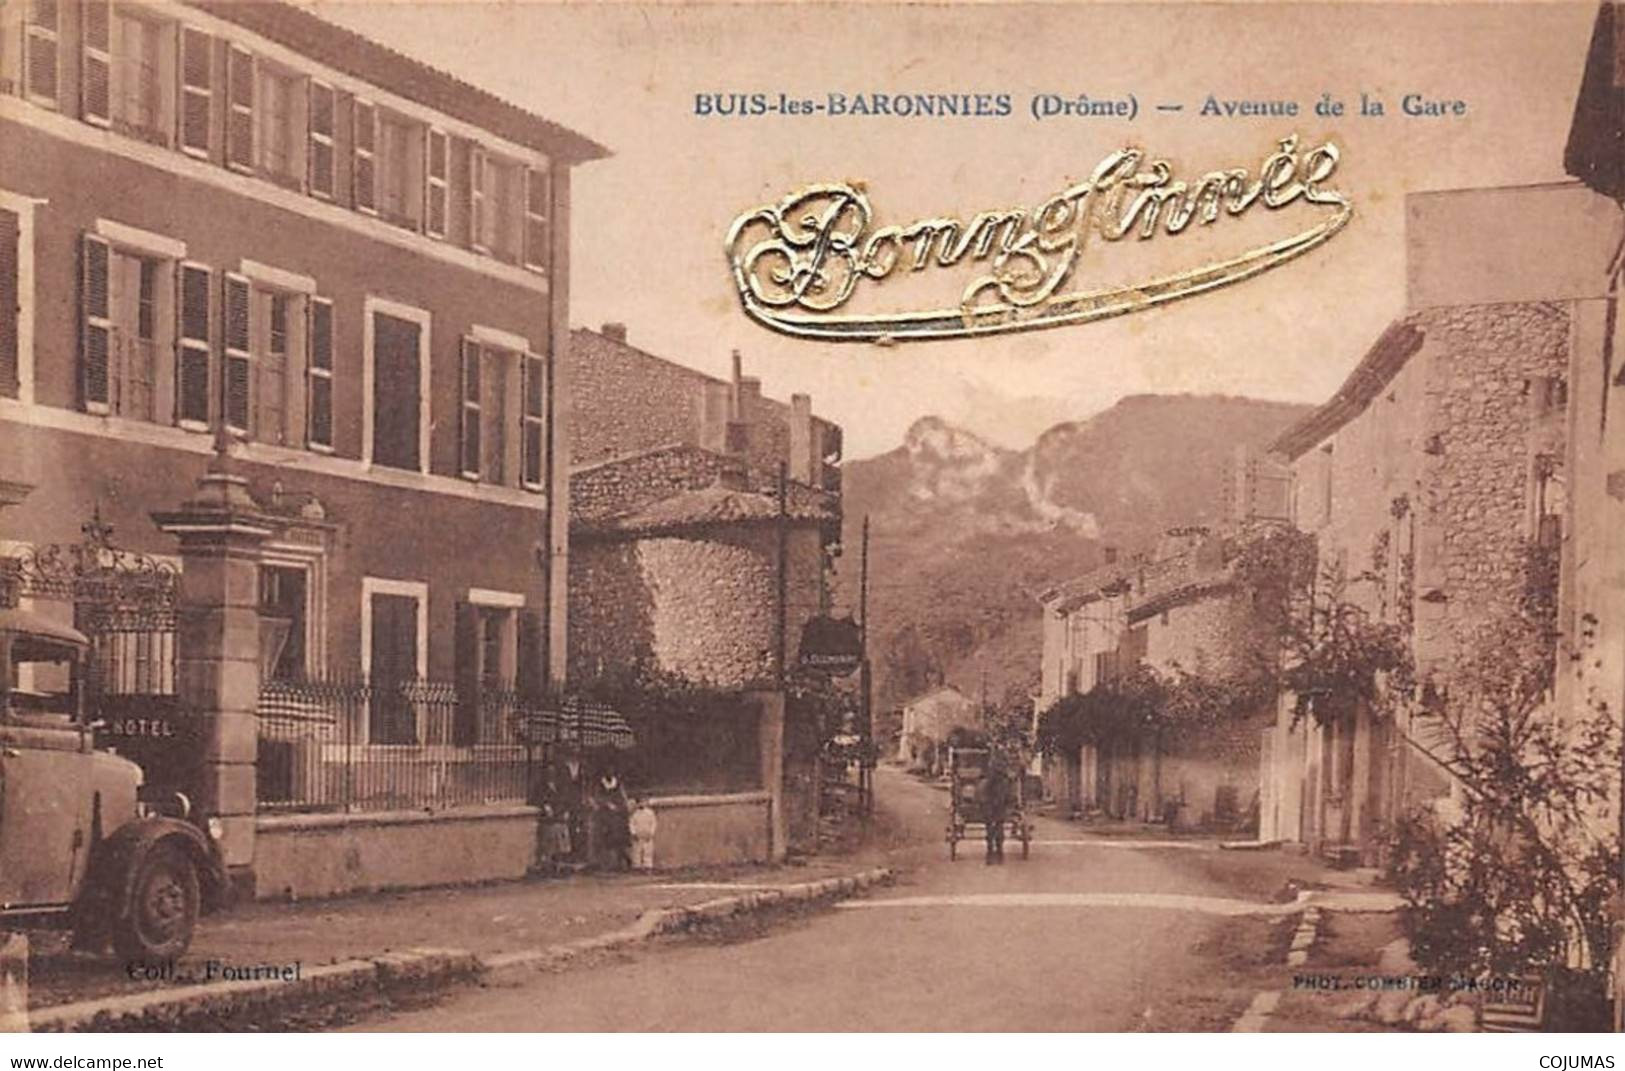 26 - BUIS LES BARONNIES - S00754 - Avenue De La Gare - Bonne Année - Charette - Camion - L1 - Buis-les-Baronnies